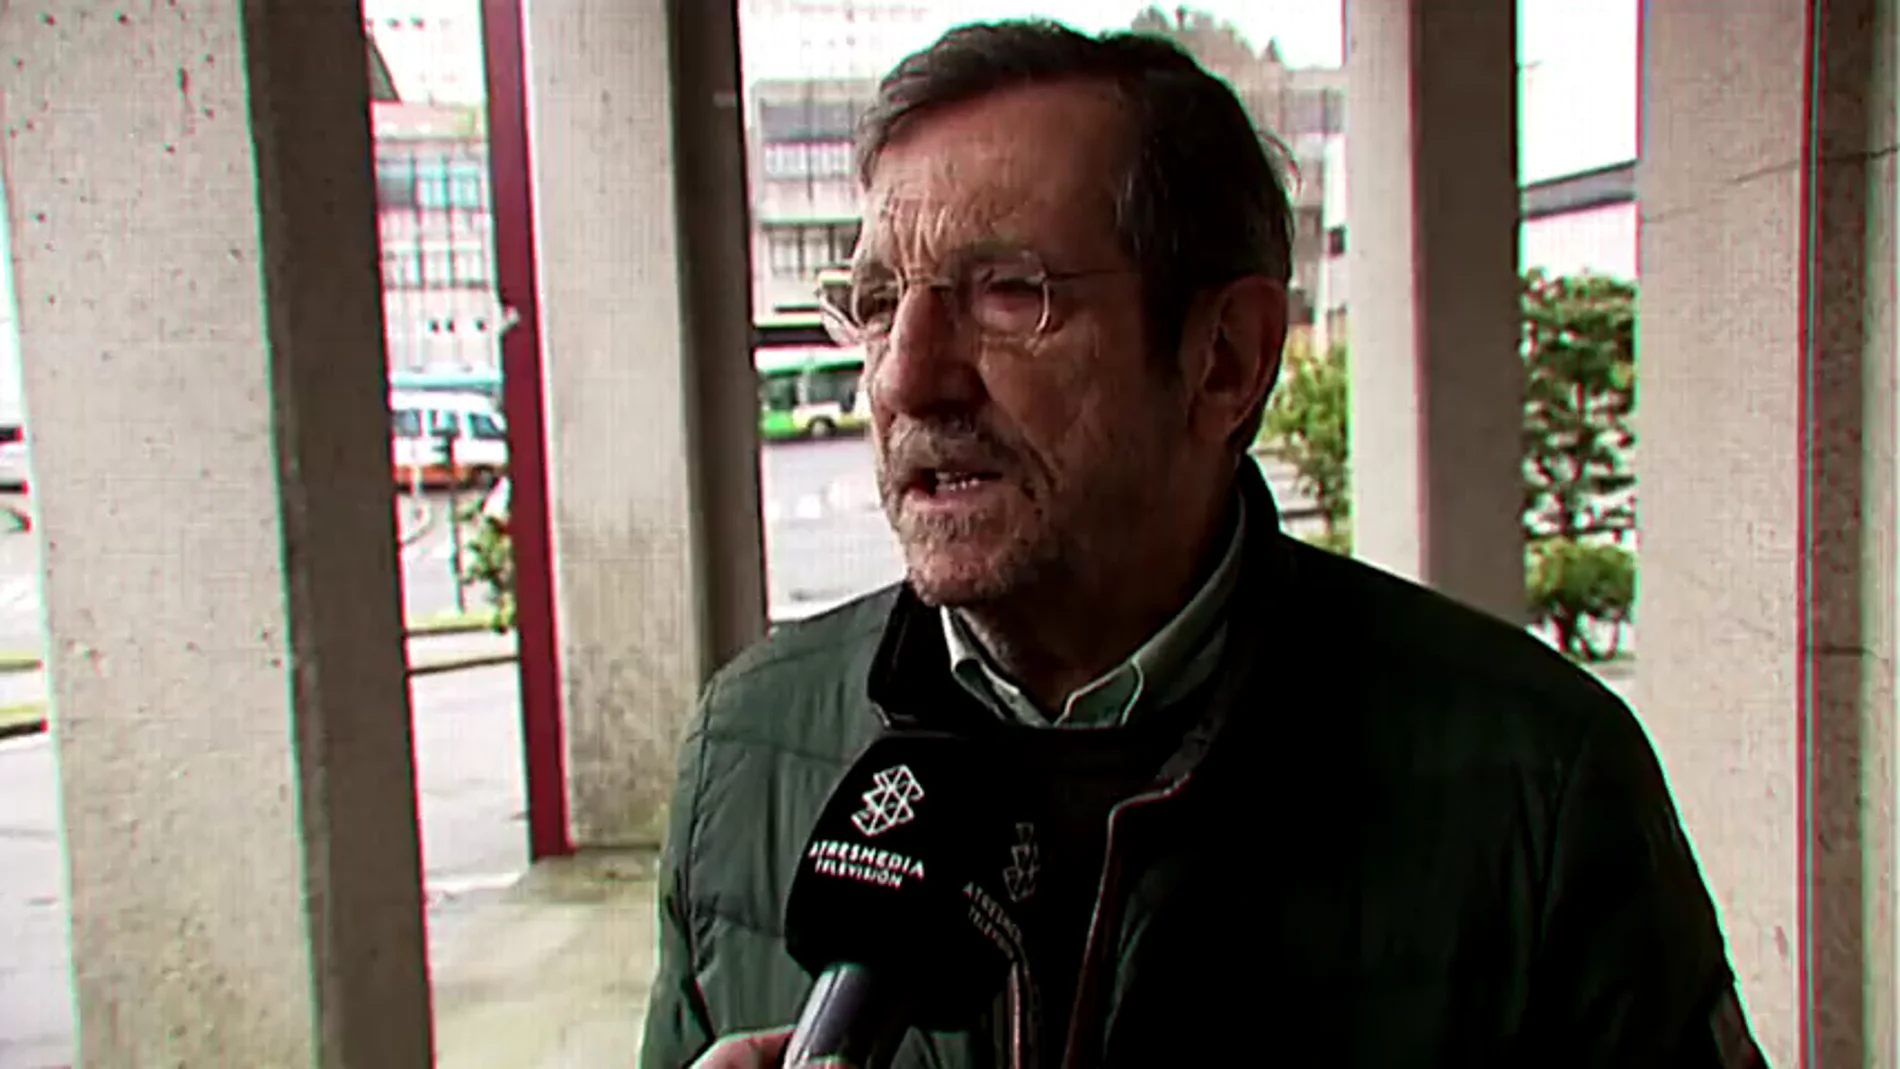 El excomisario Enrique León, sobre el asalto a la casa de Manuel Charlín: "Pienso que es un recado que le manda alguien"